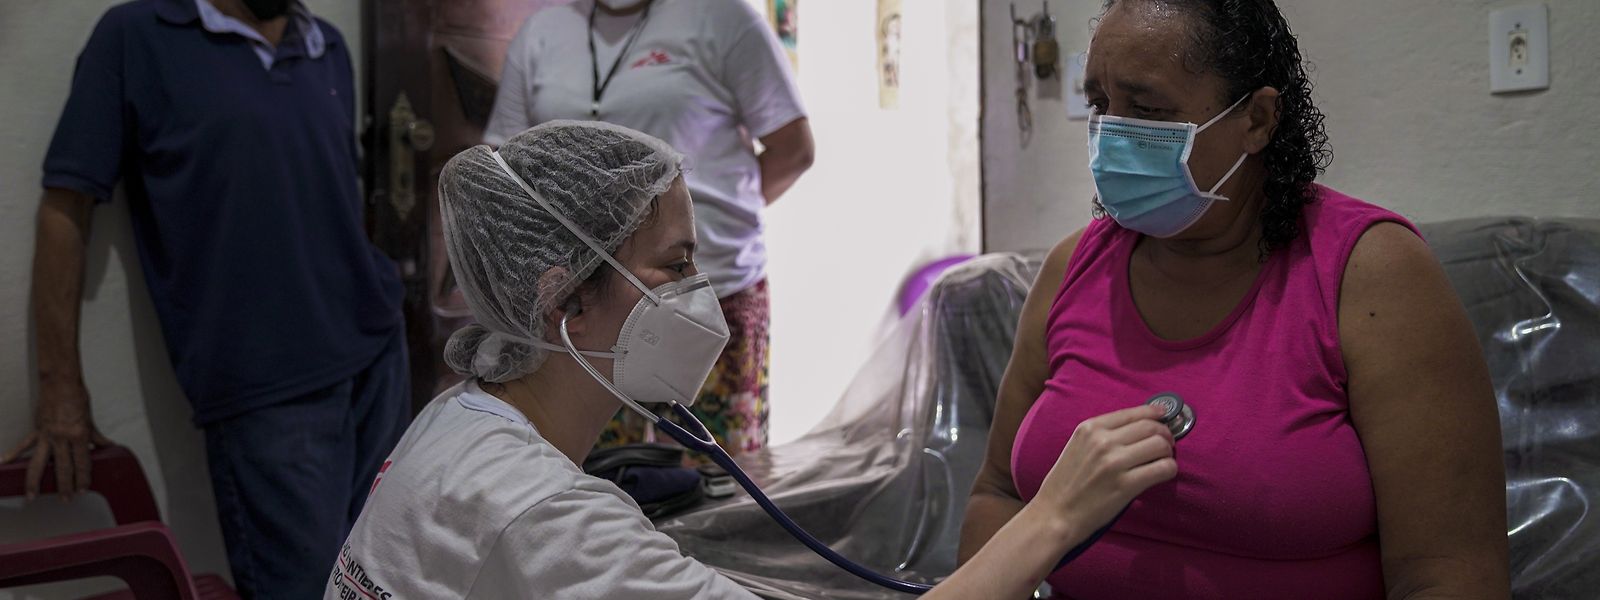 Médecins sans frontières war 2020 mit 64.000 Mitarbeitern in 88 Ländern aktiv.